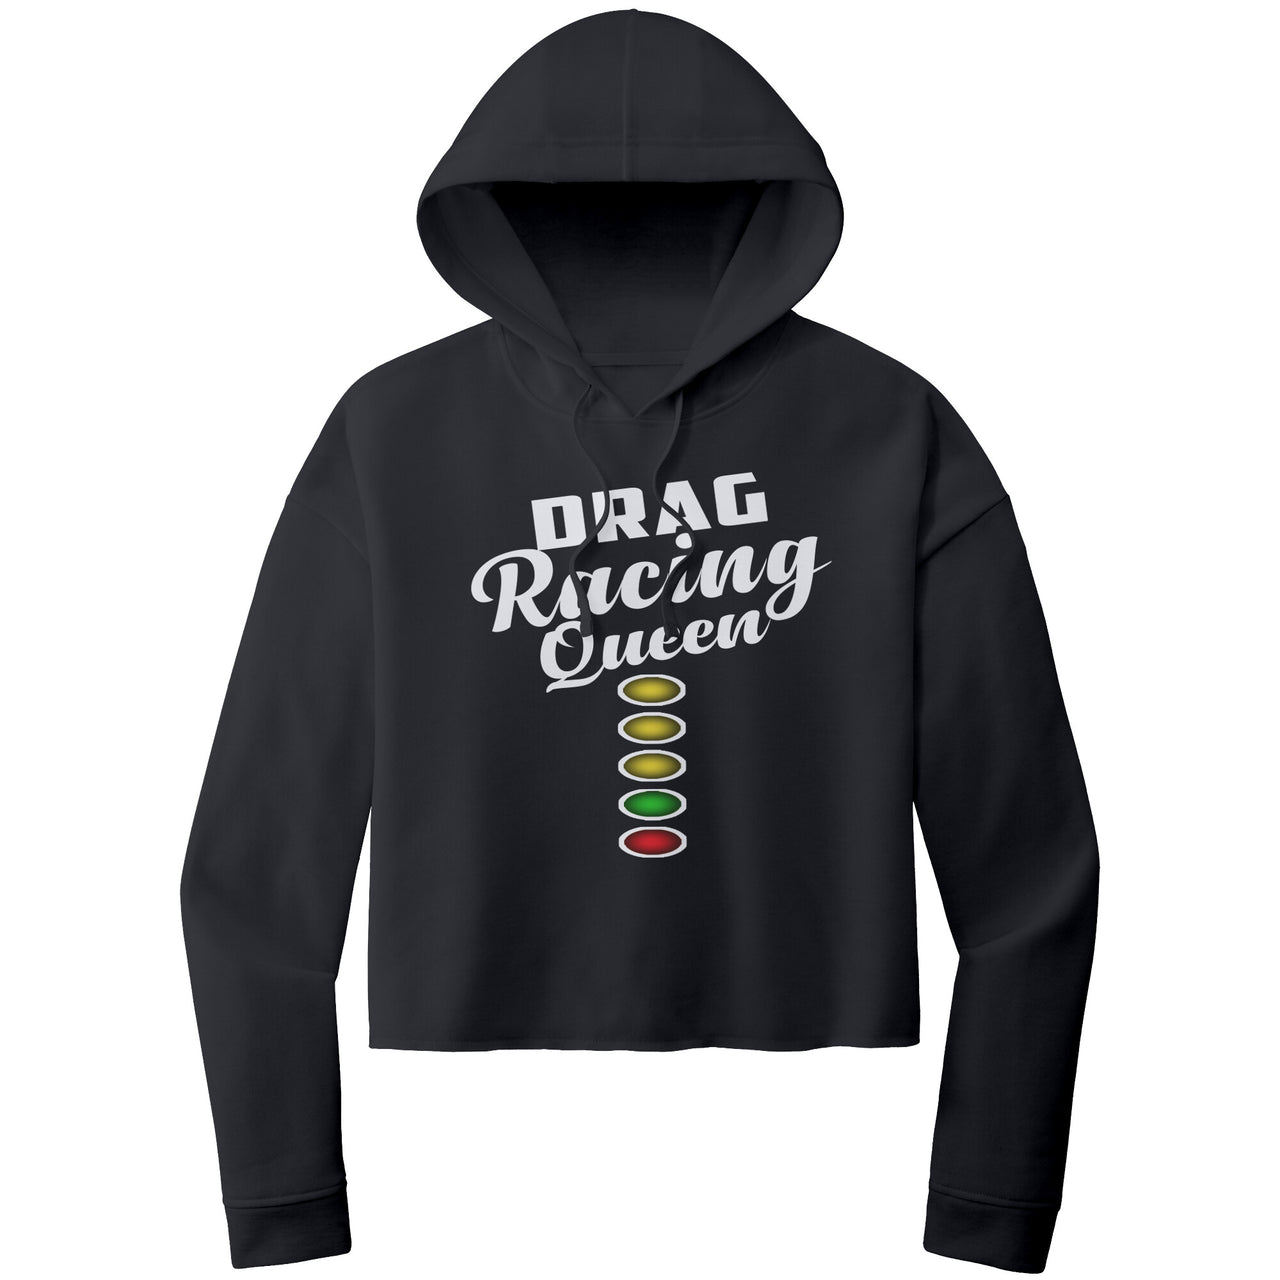 Drag Racing Queen Crop Top hoodie